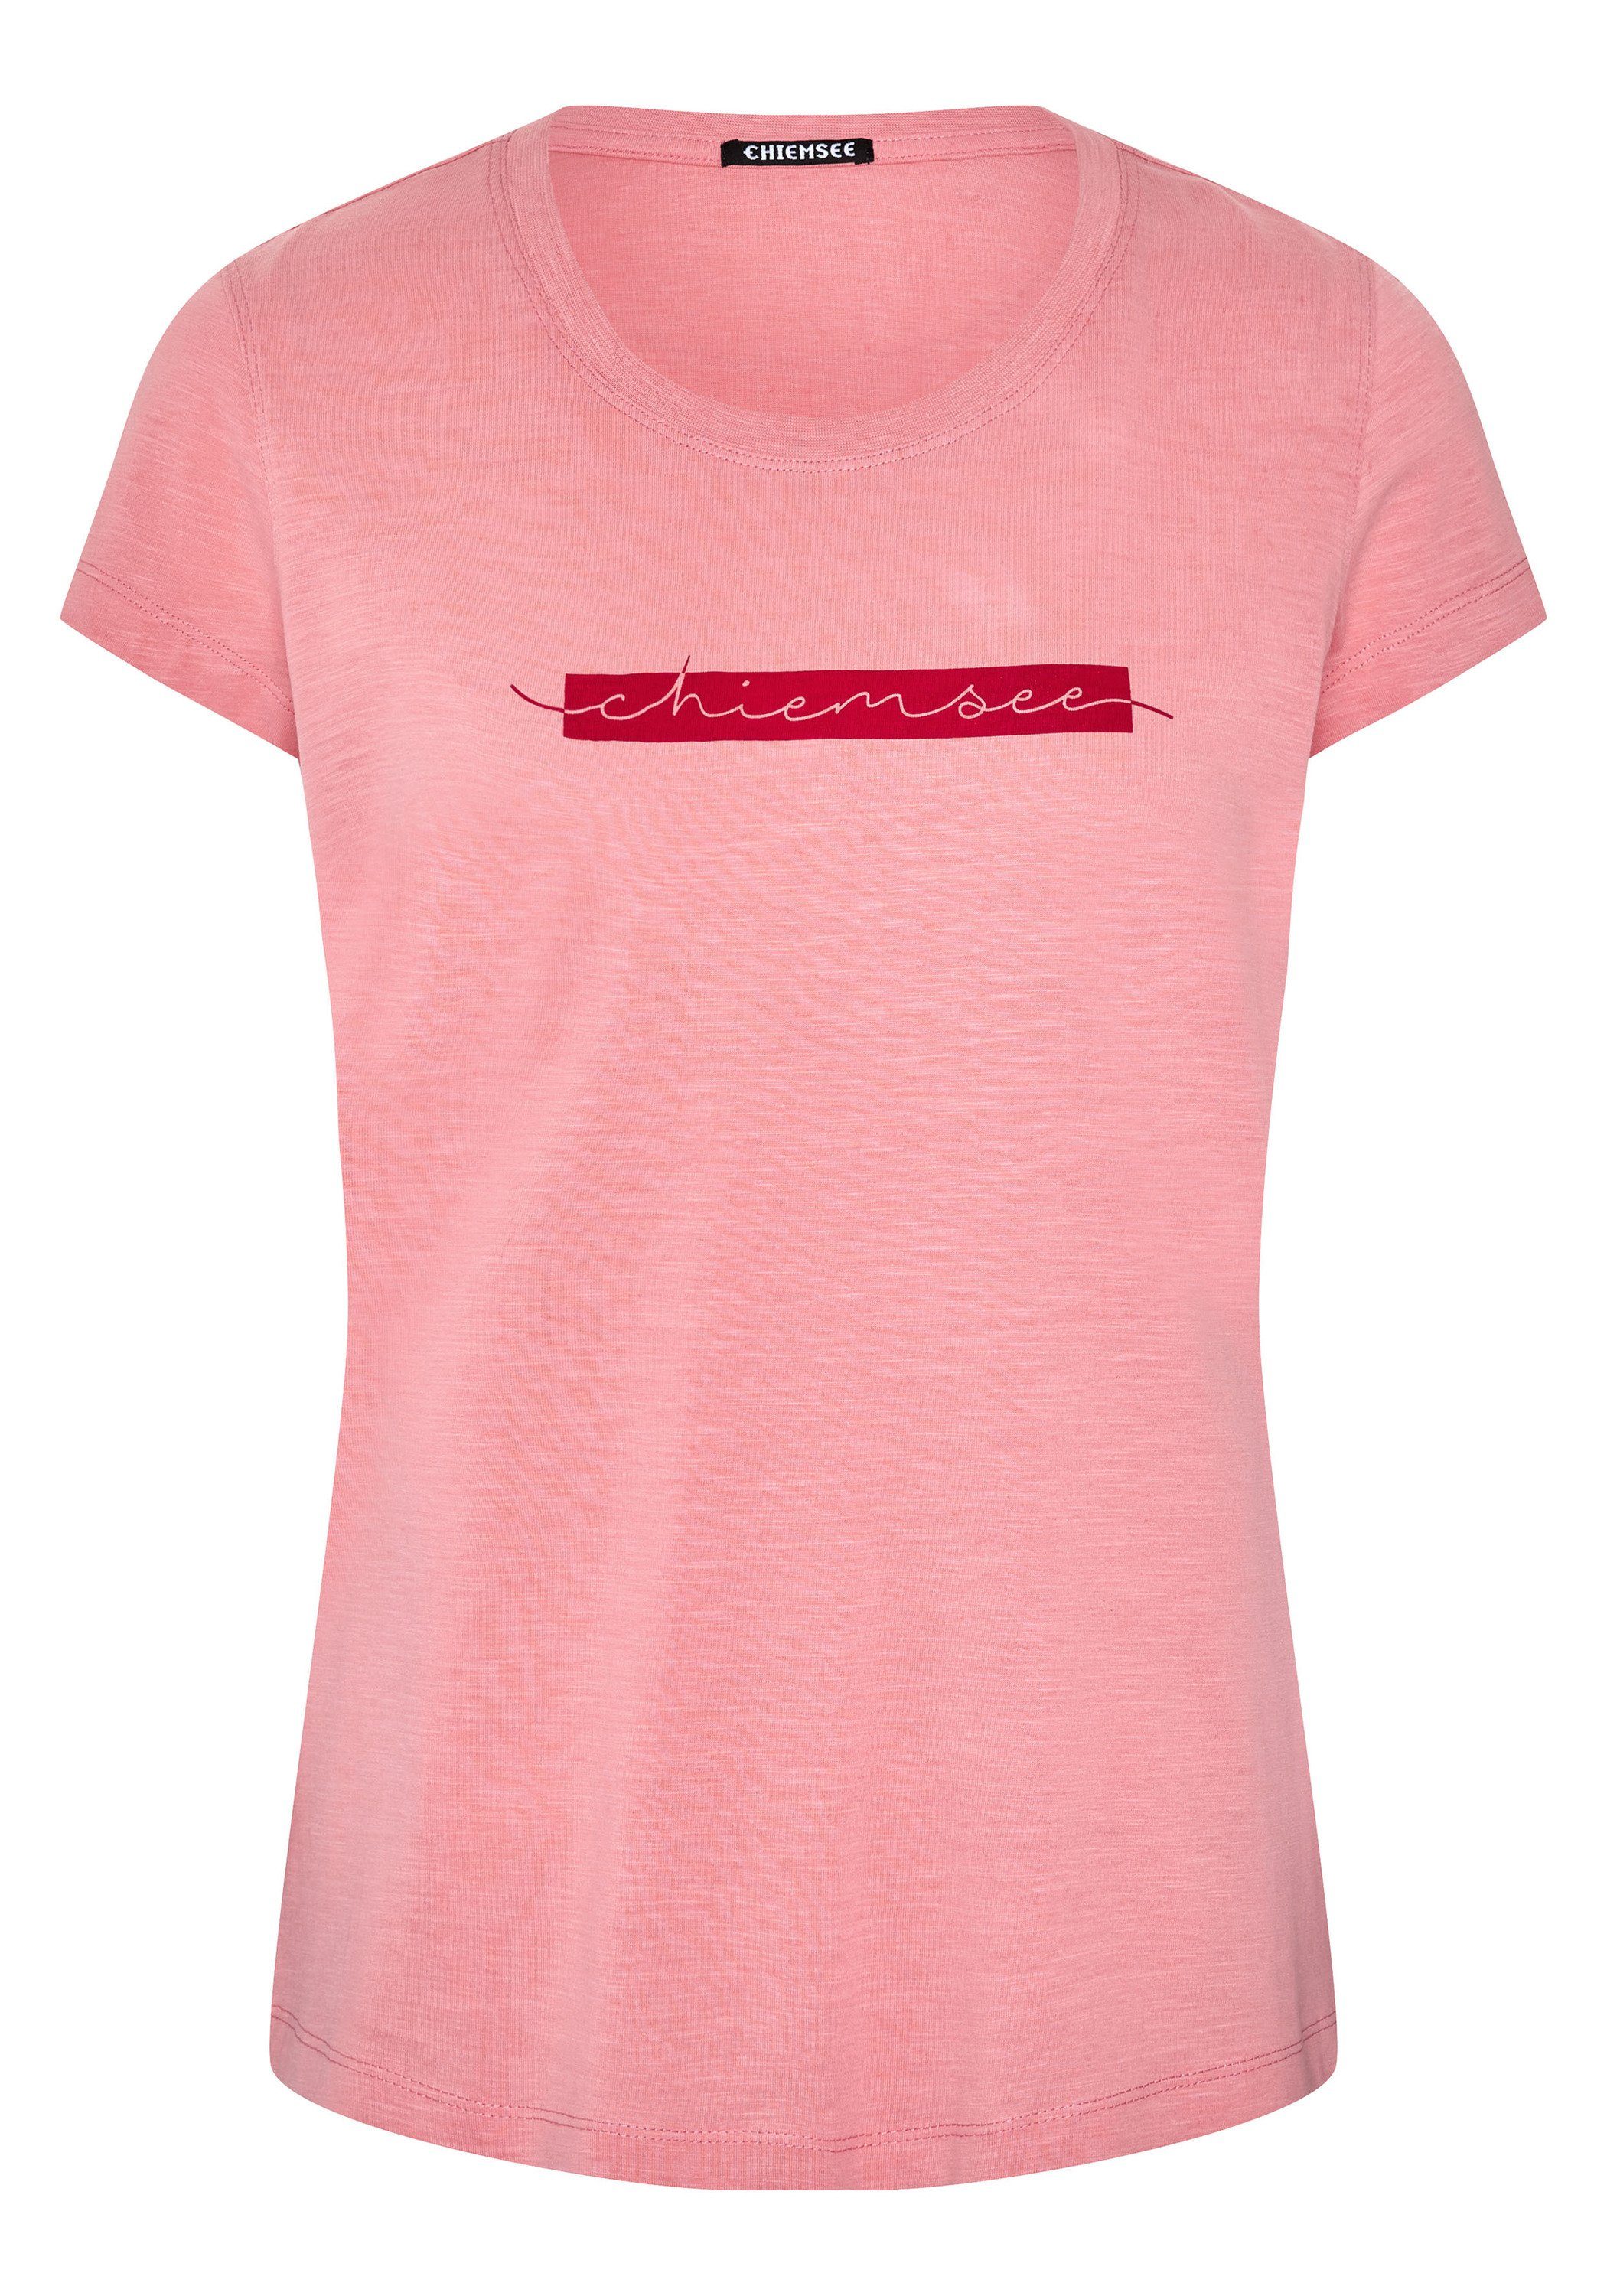 Chiemsee Print-Shirt T-Shirt mit Logo-Schriftzug 1 Salmon Rose